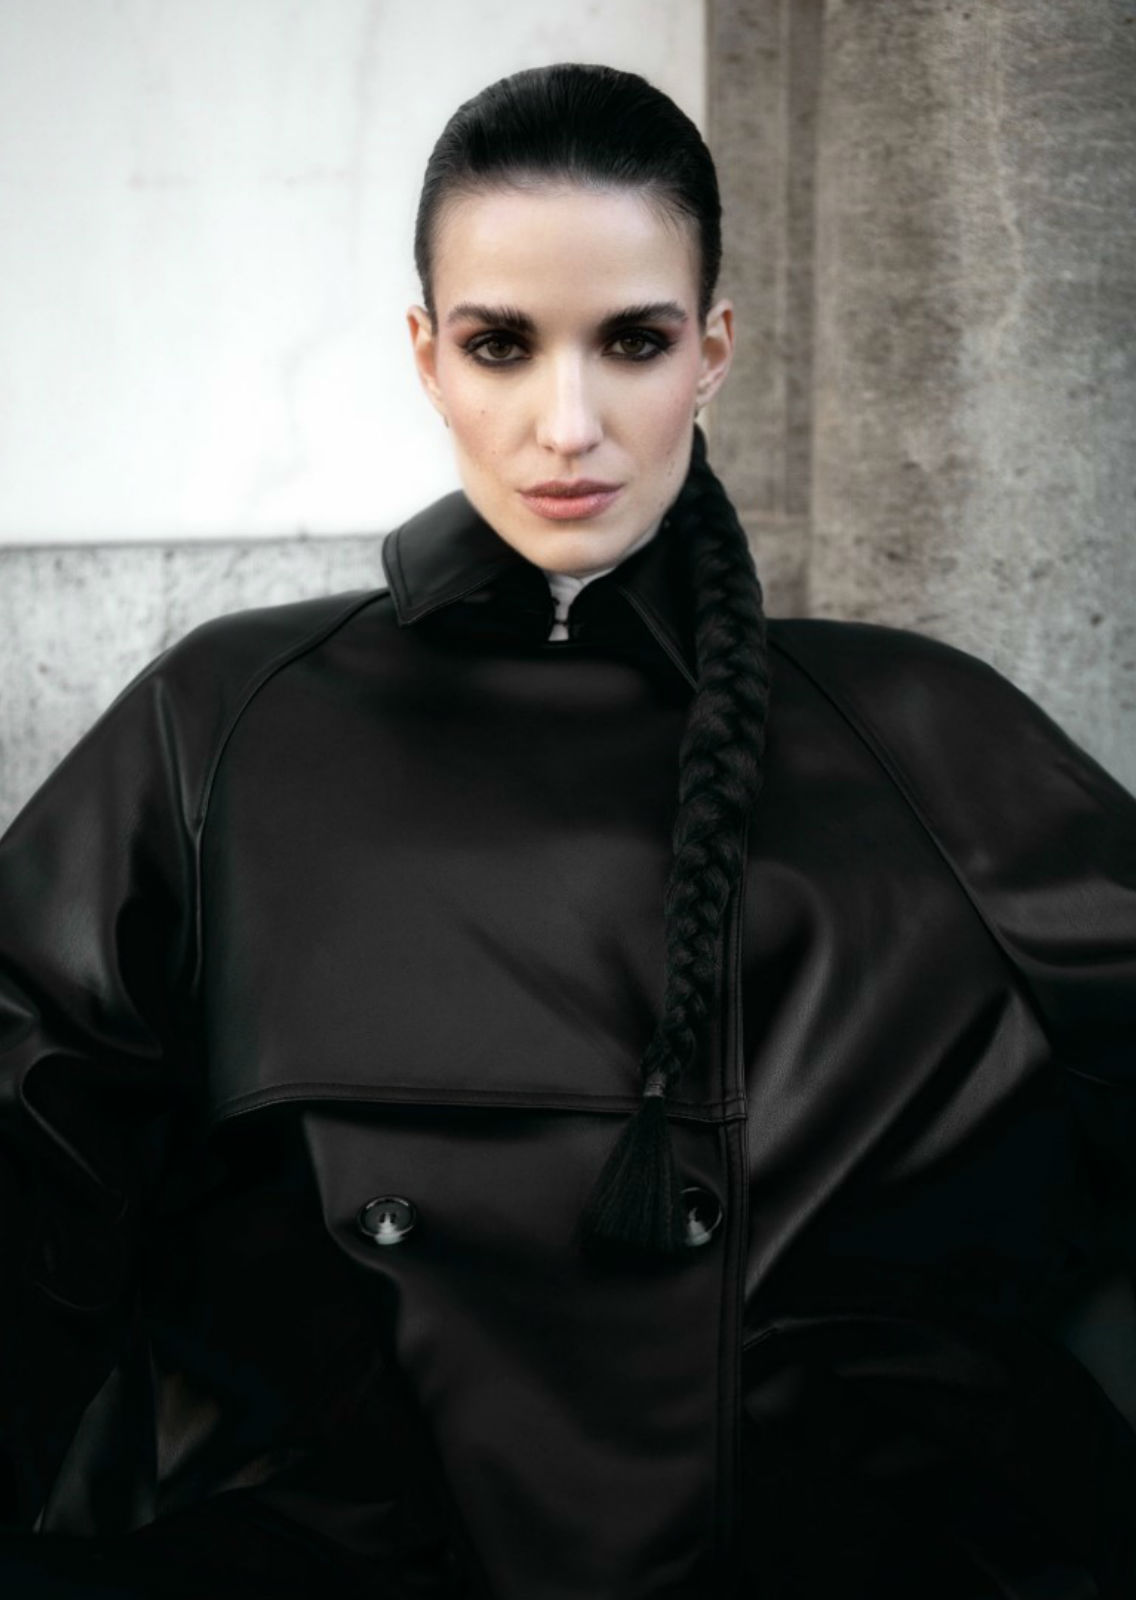 ALINA HILLER. Carmen Duran Model Agency.